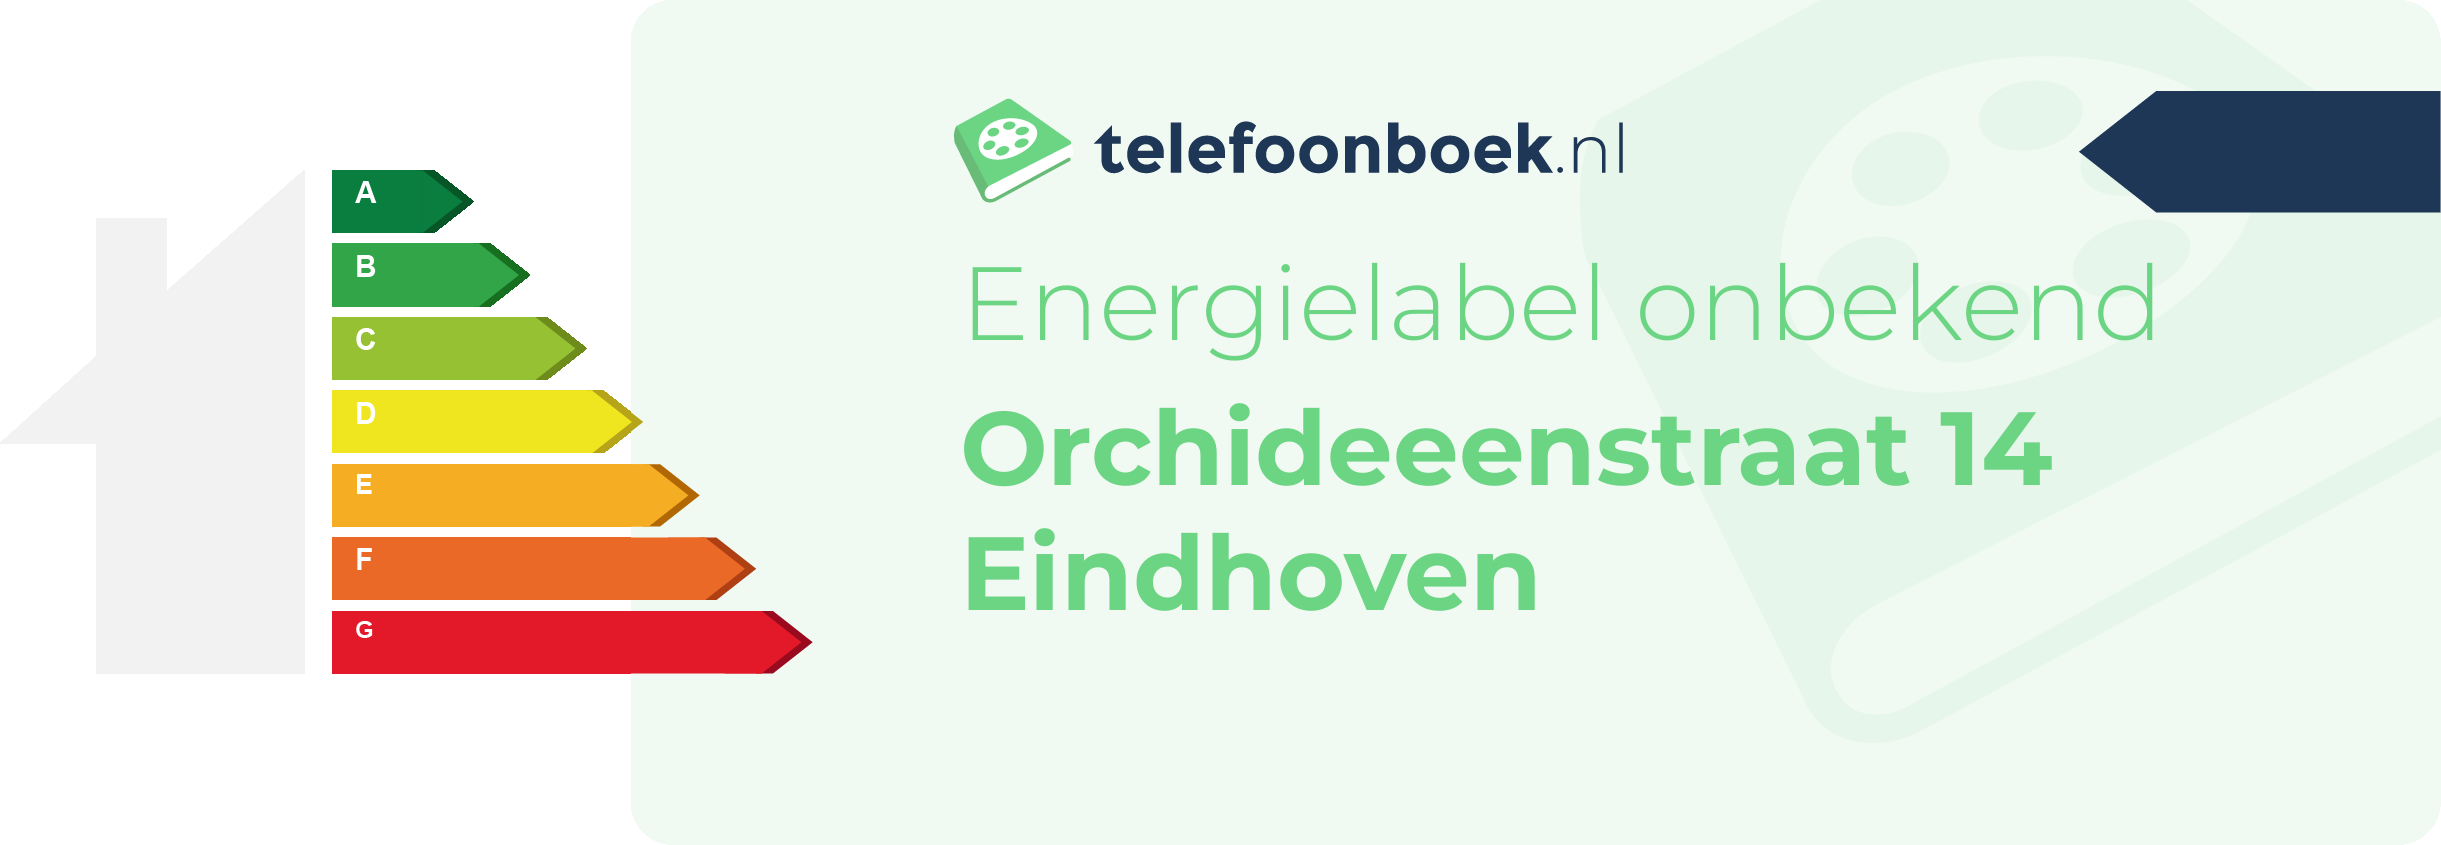 Energielabel Orchideeenstraat 14 Eindhoven